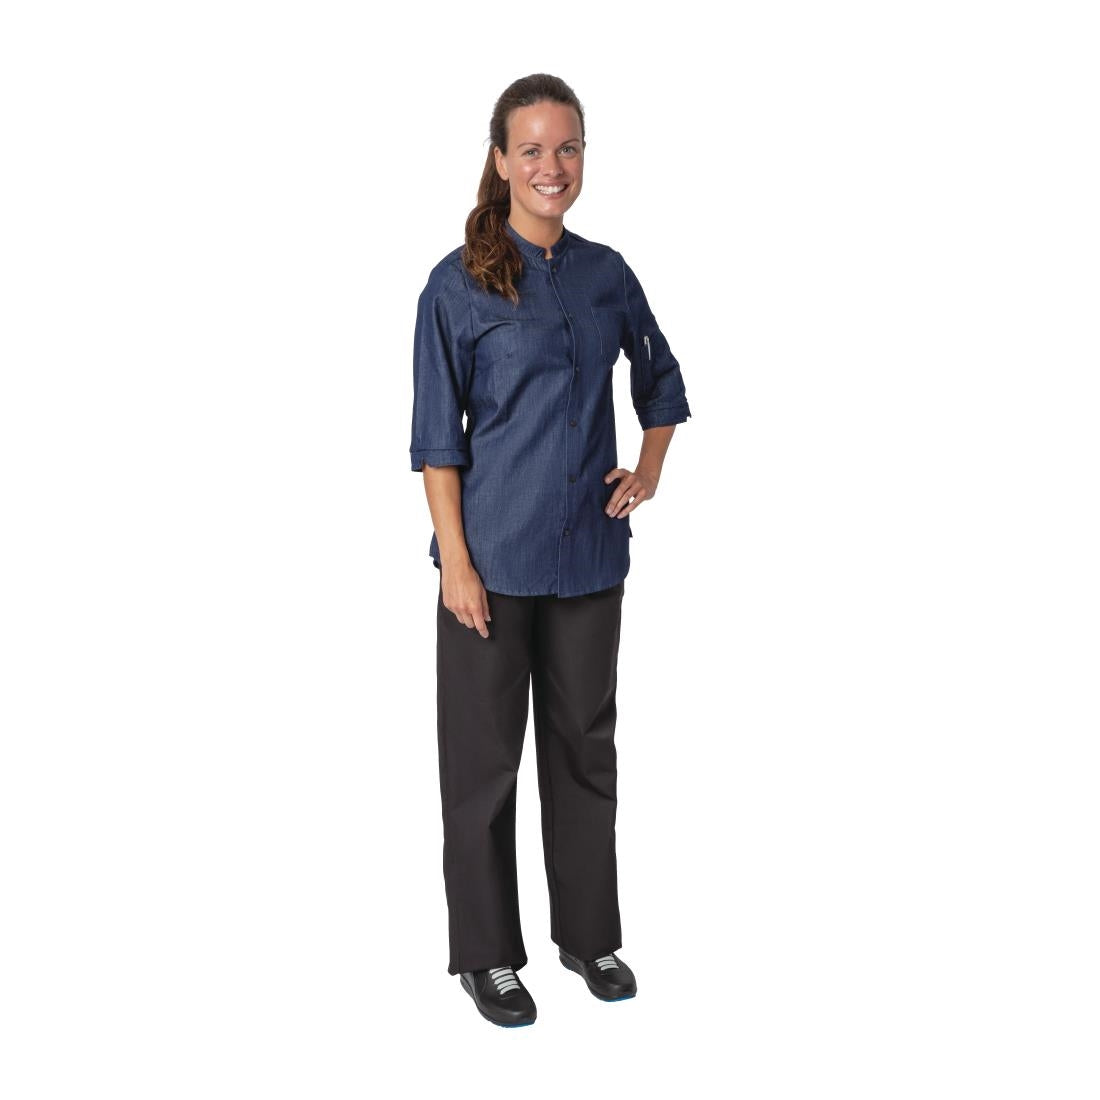 BA003-XL Southside NY Queens Womens Denim Lightweight Chefs Shirt Size XL JD Catering Equipment Solutions Ltd